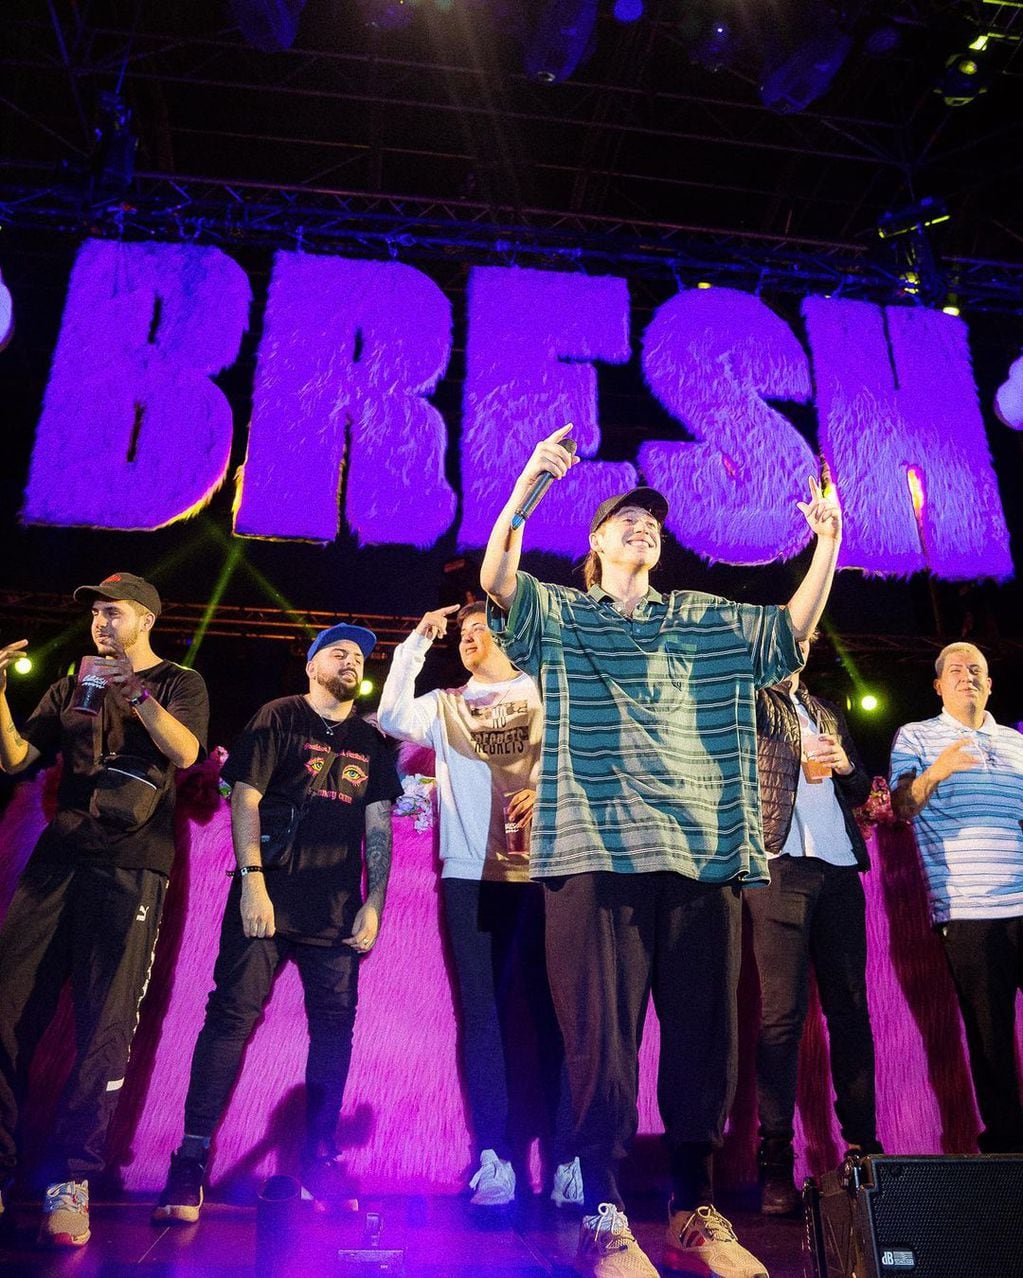 El rapero subió al escenario de la Fiesta Bresh y sorprendió al público.